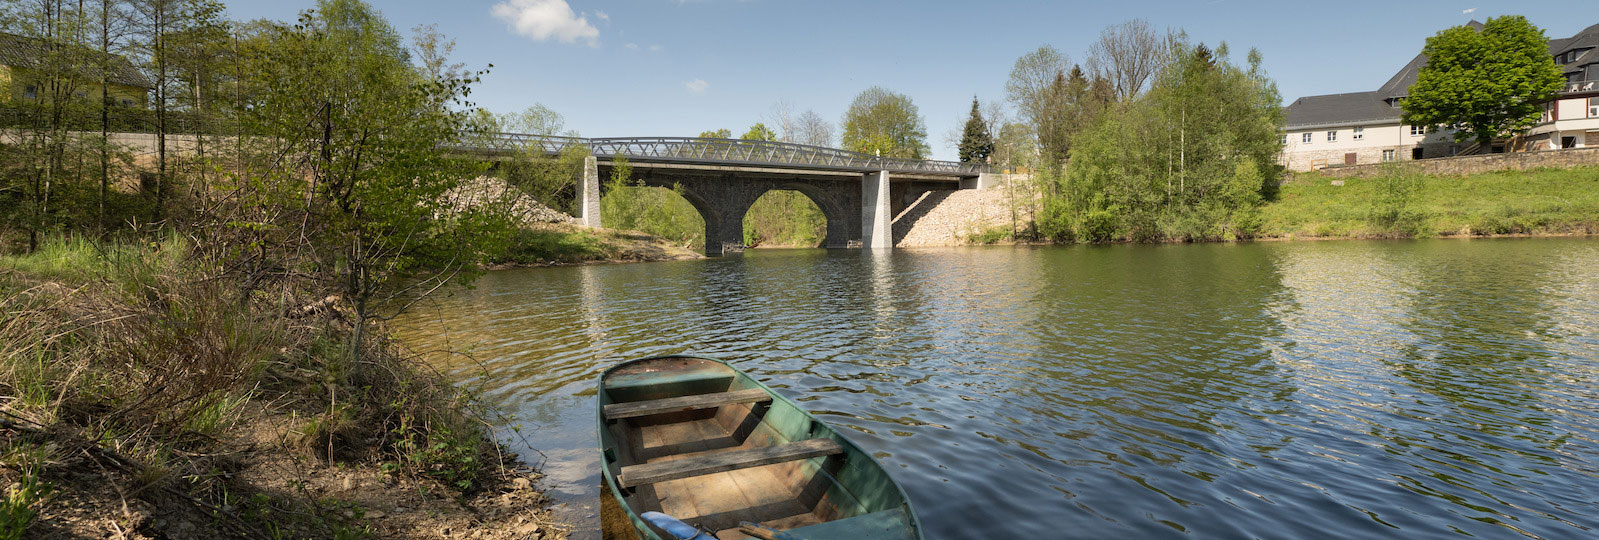 Lämmergrund Bridge in Paulsdorf